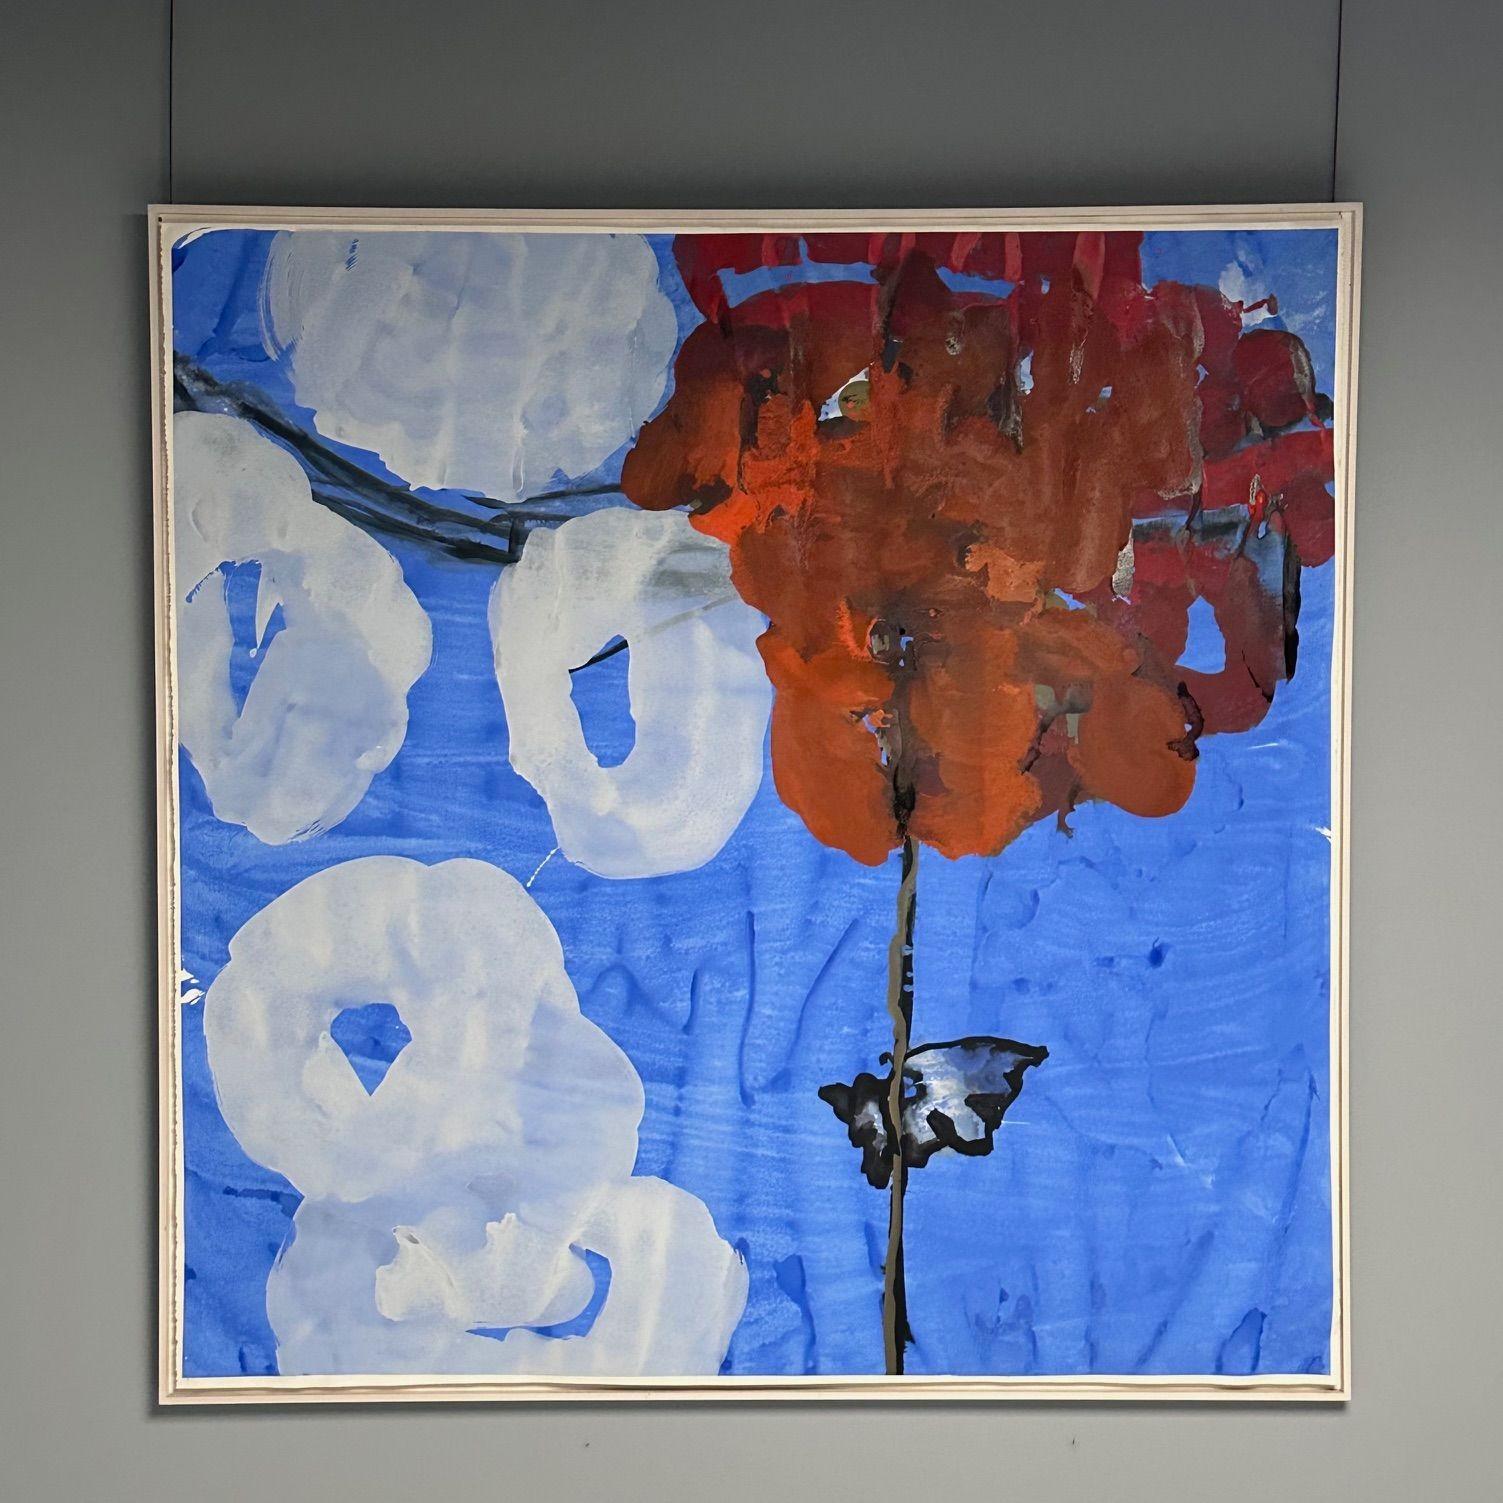 Zeitgenössisch, großes modernes Aquarell, abstrakte Himmelsmalerei, blau, weiße Wolken, rote Blume

Ein großes, abstraktes Aquarell, das einen Himmel mit Wolken der Avon Products Corporate Collection darstellt. Dieses Werk auf Papier hat